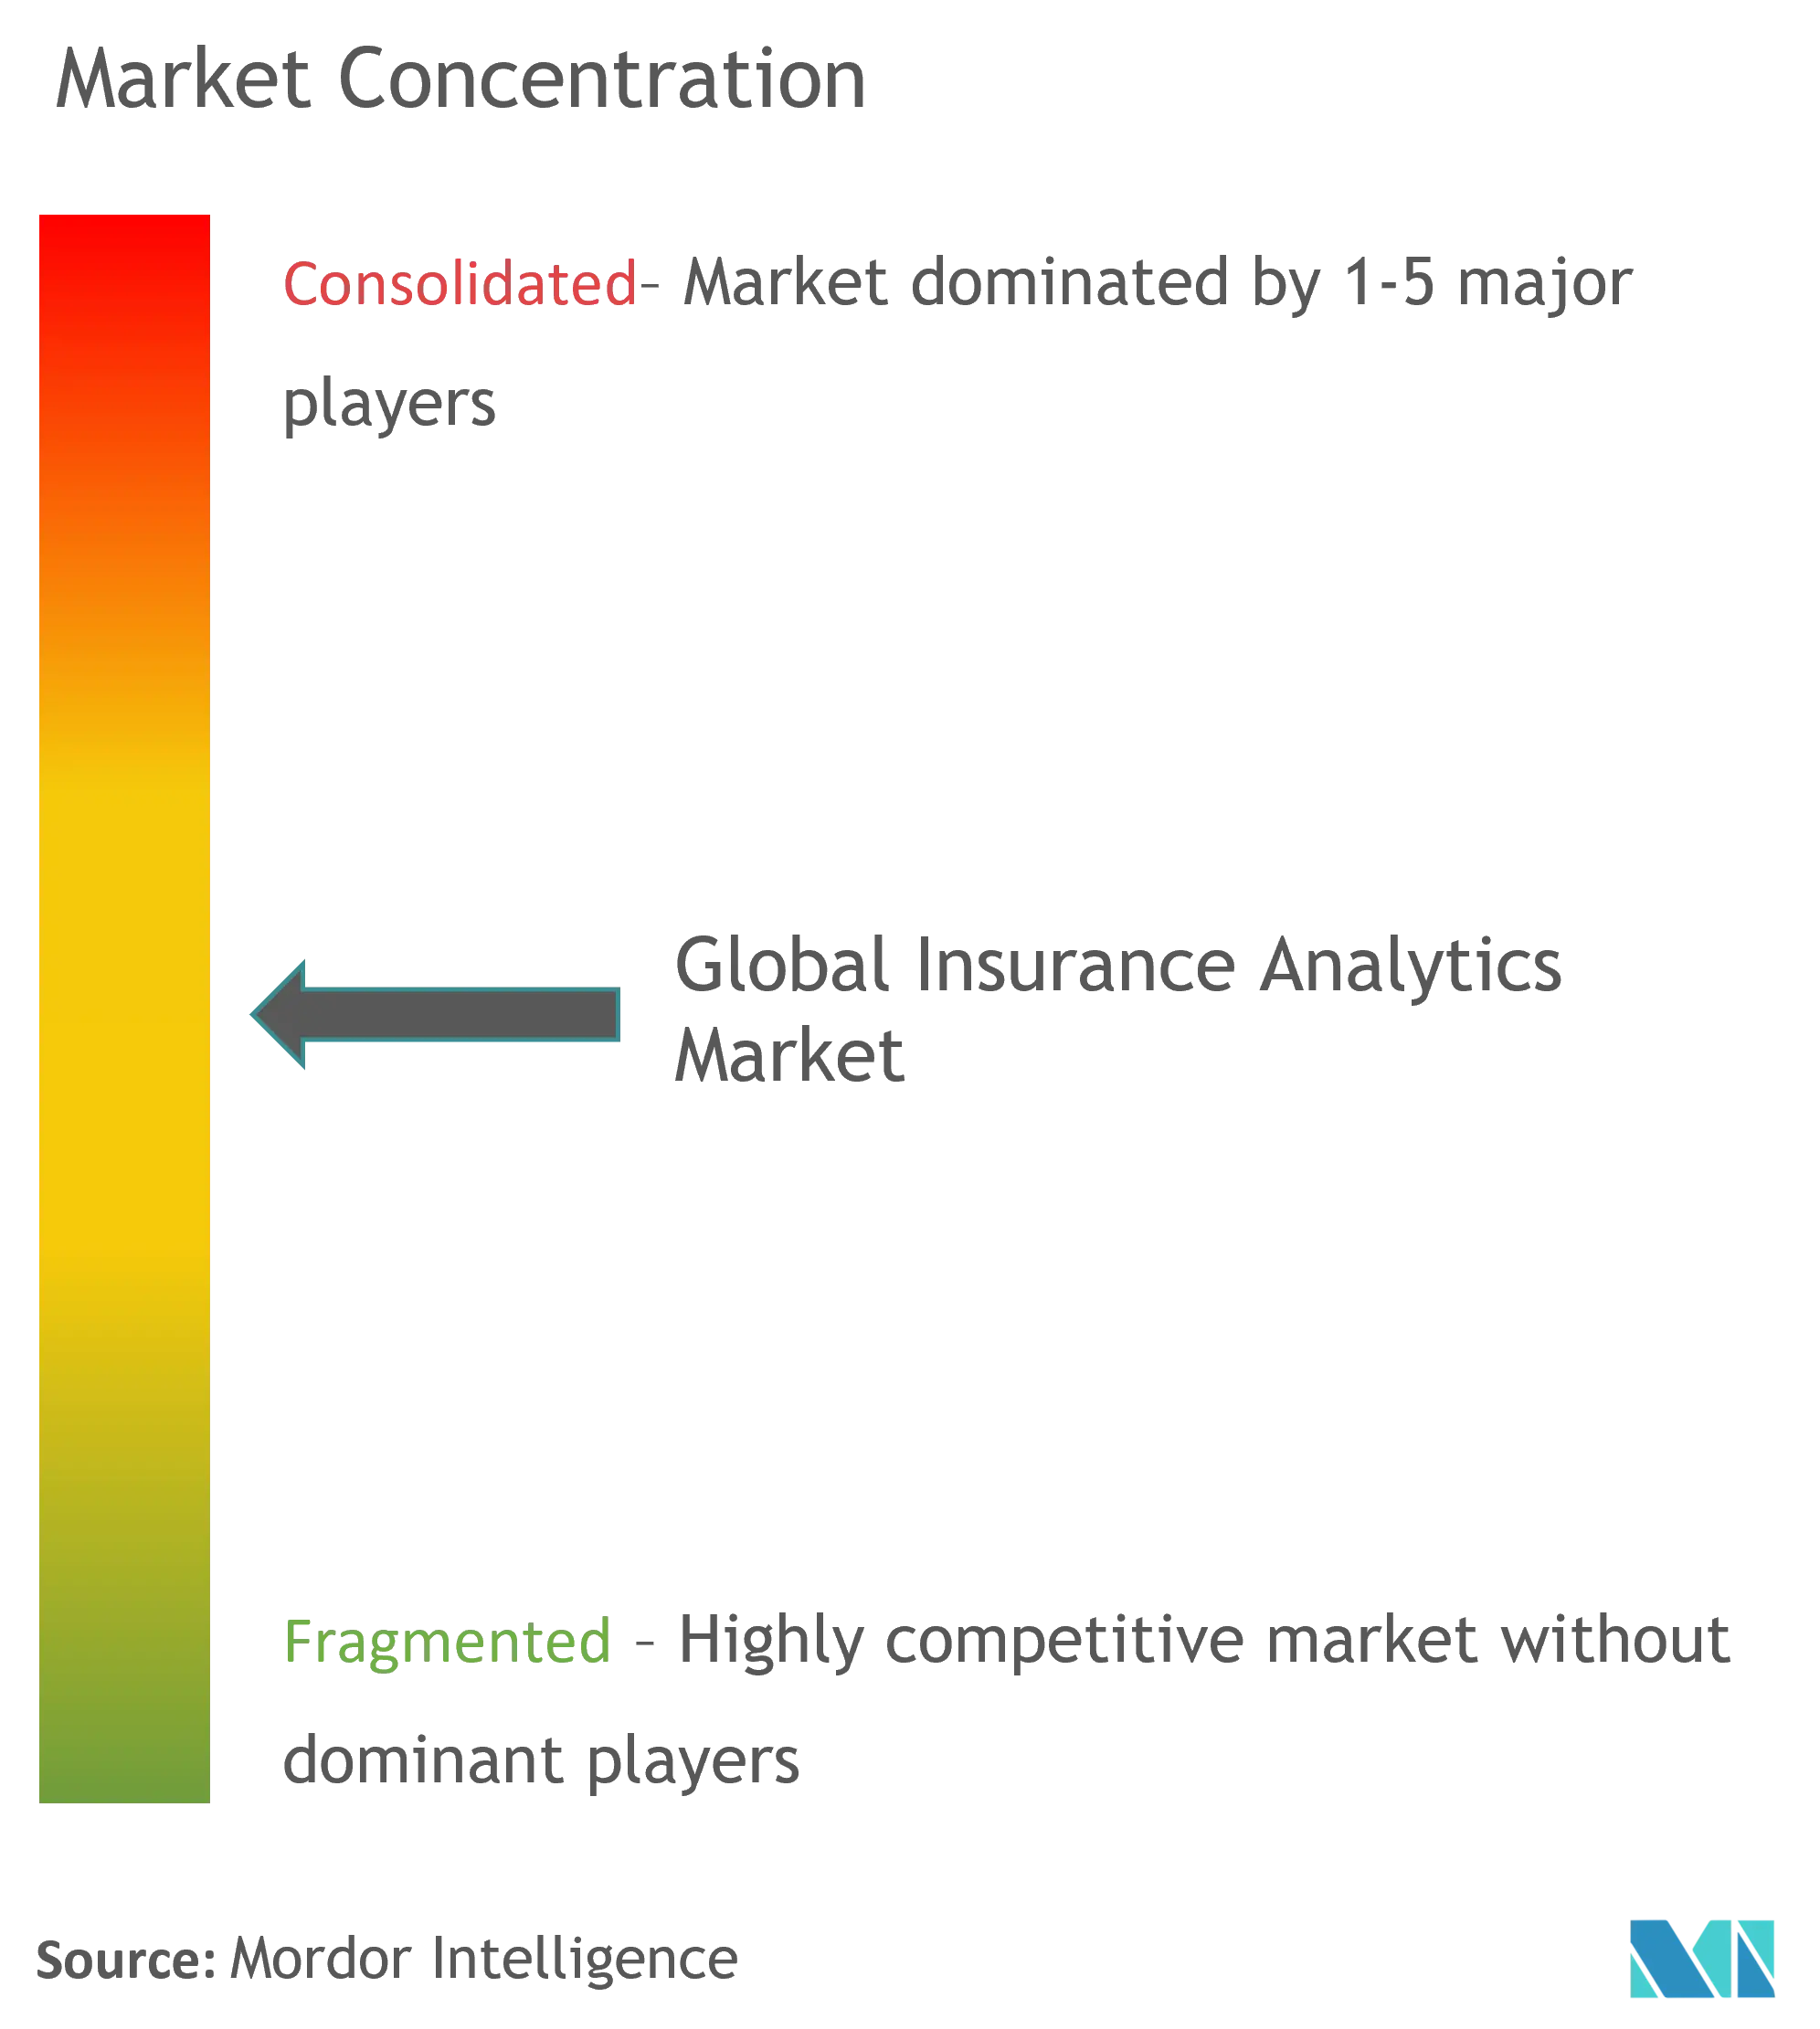 Concentración del mercado de análisis de seguros